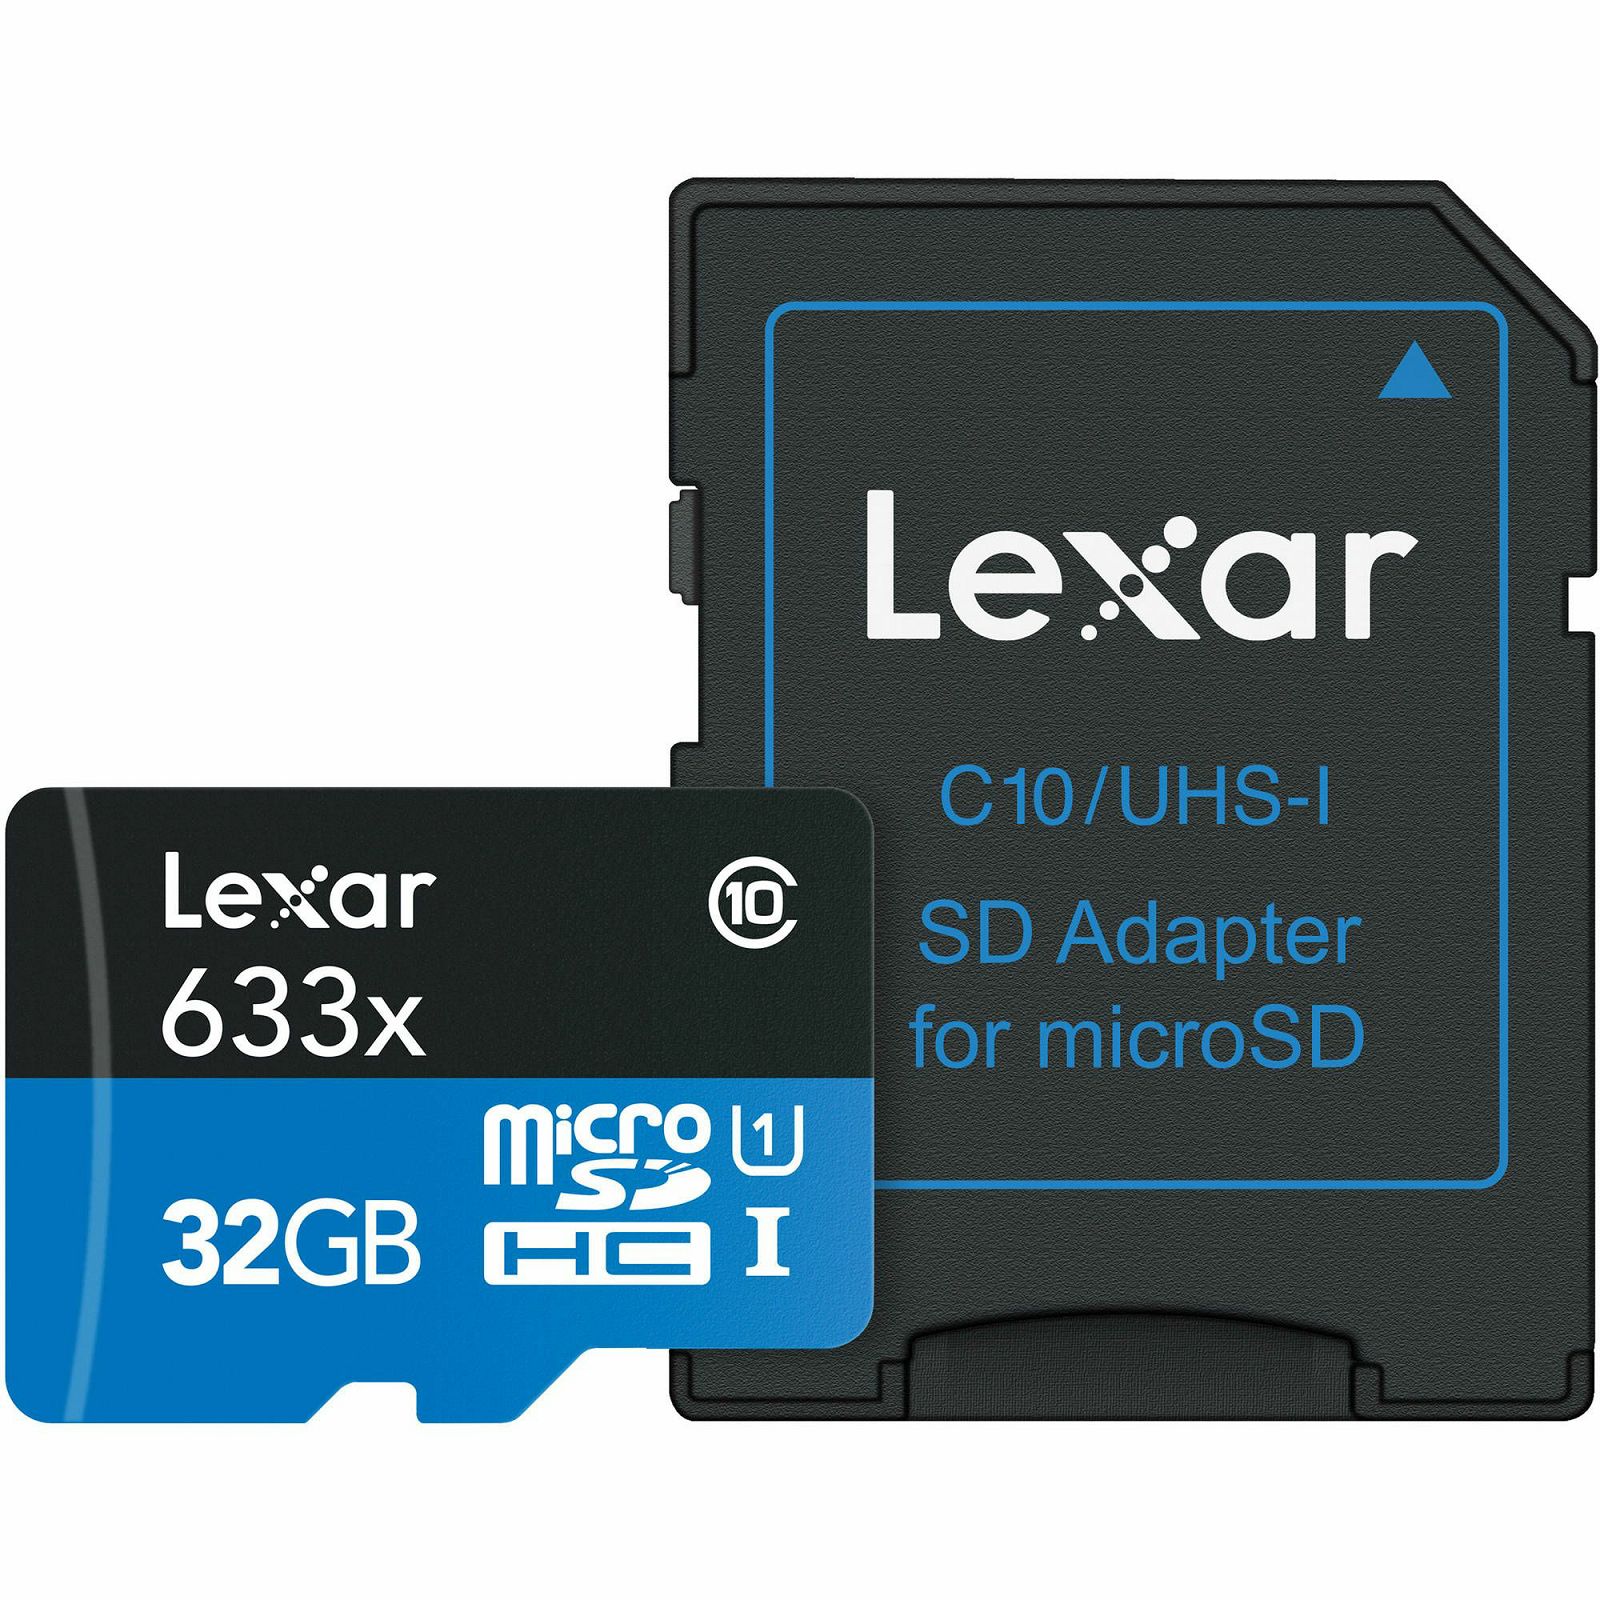 Lexar microSDHC 633x 95MB/s UHS-I 32GB sa USB 3.0 Reader čitač kartica i memorijska kartica sa adapterom LSDMI32GBB1EU633R